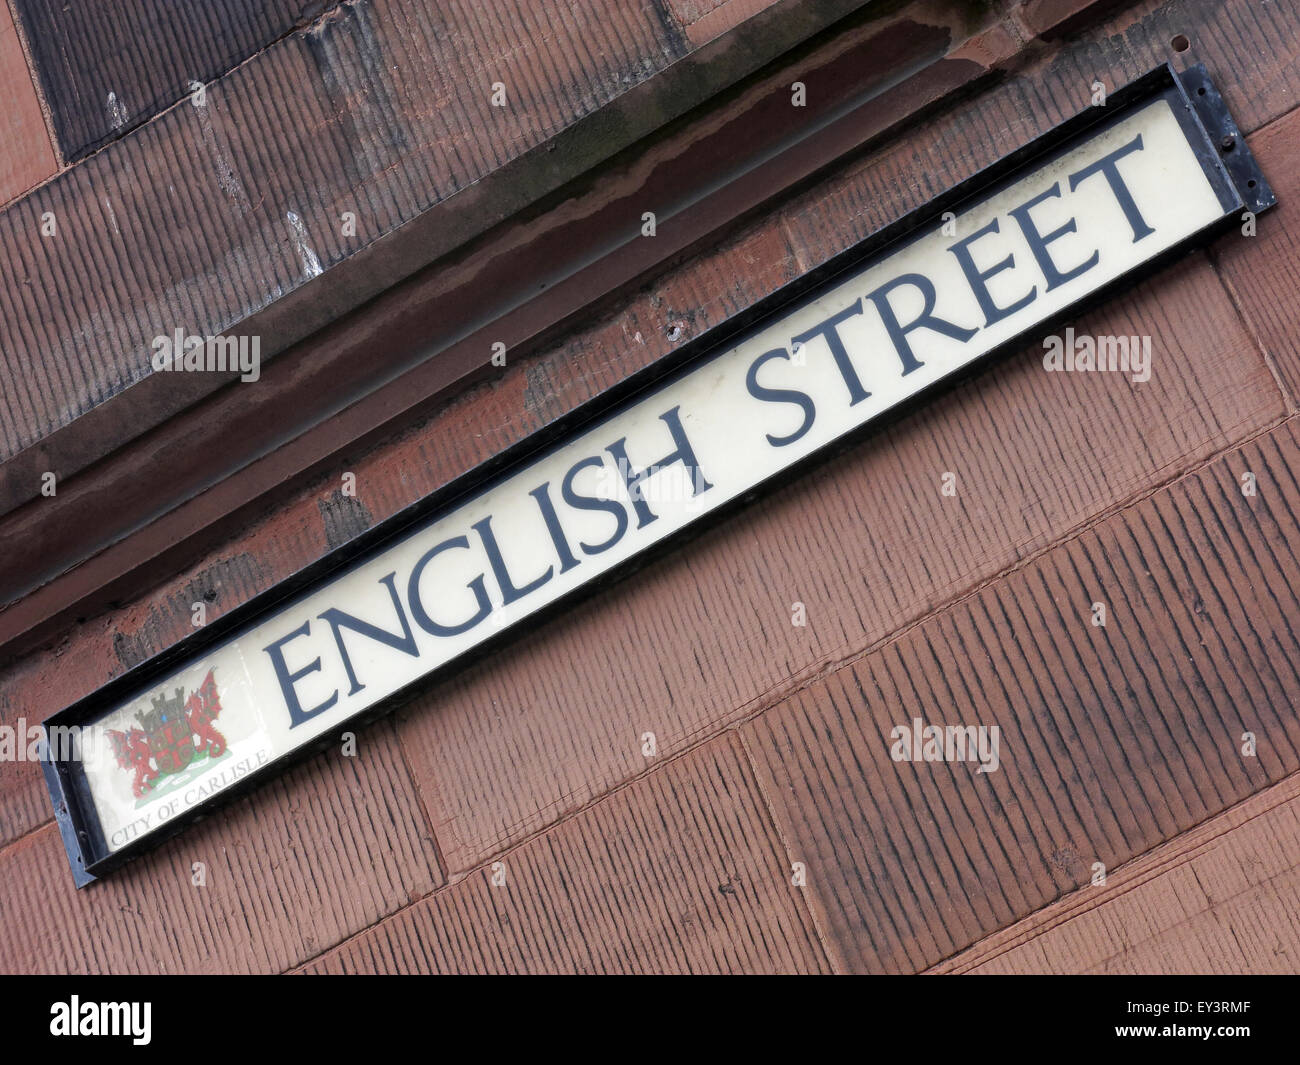 Rues en anglais et écossais du nom de Carlisle, Cumbria, England, UK - pays frontaliers Banque D'Images